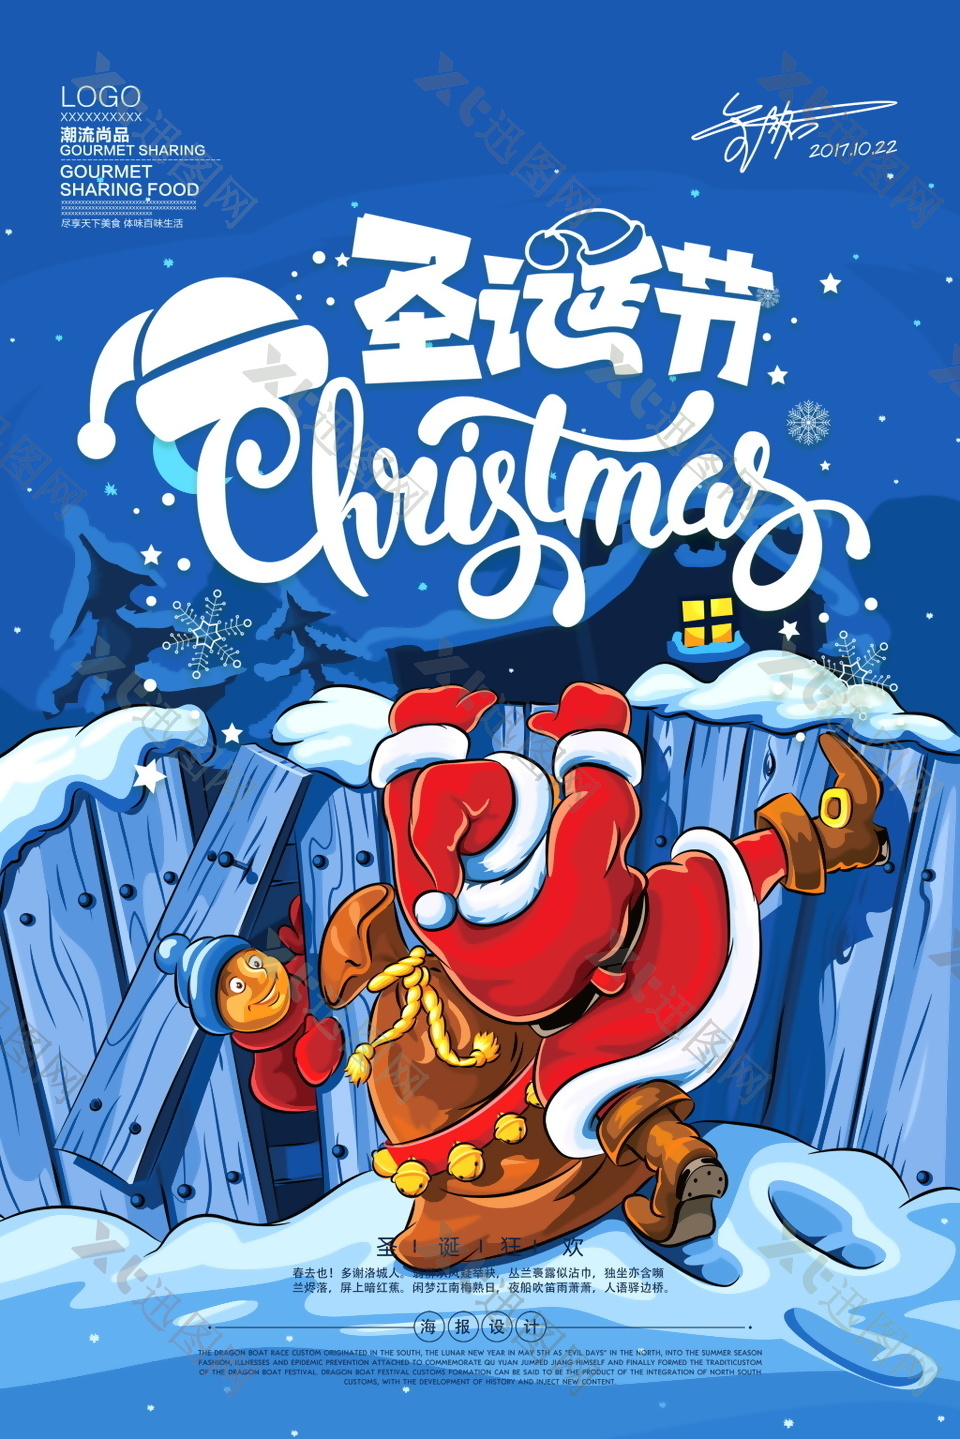 2017圣诞节海报设计